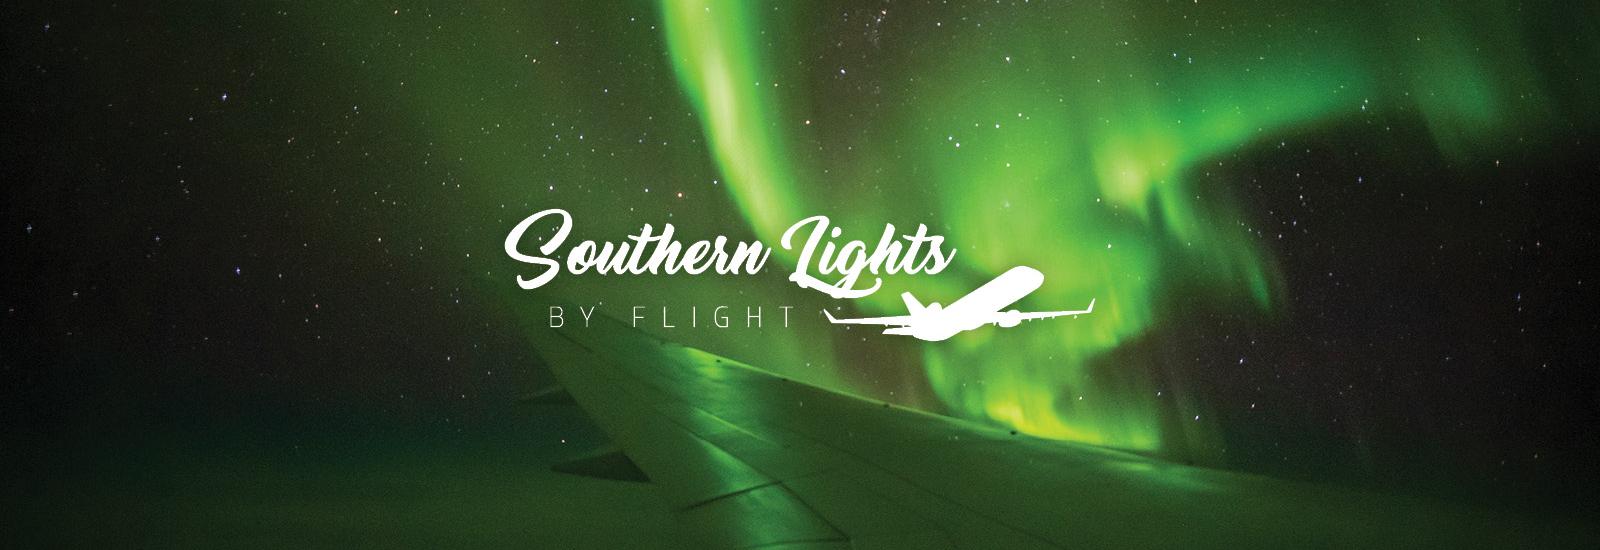 Southern Lights by Flight